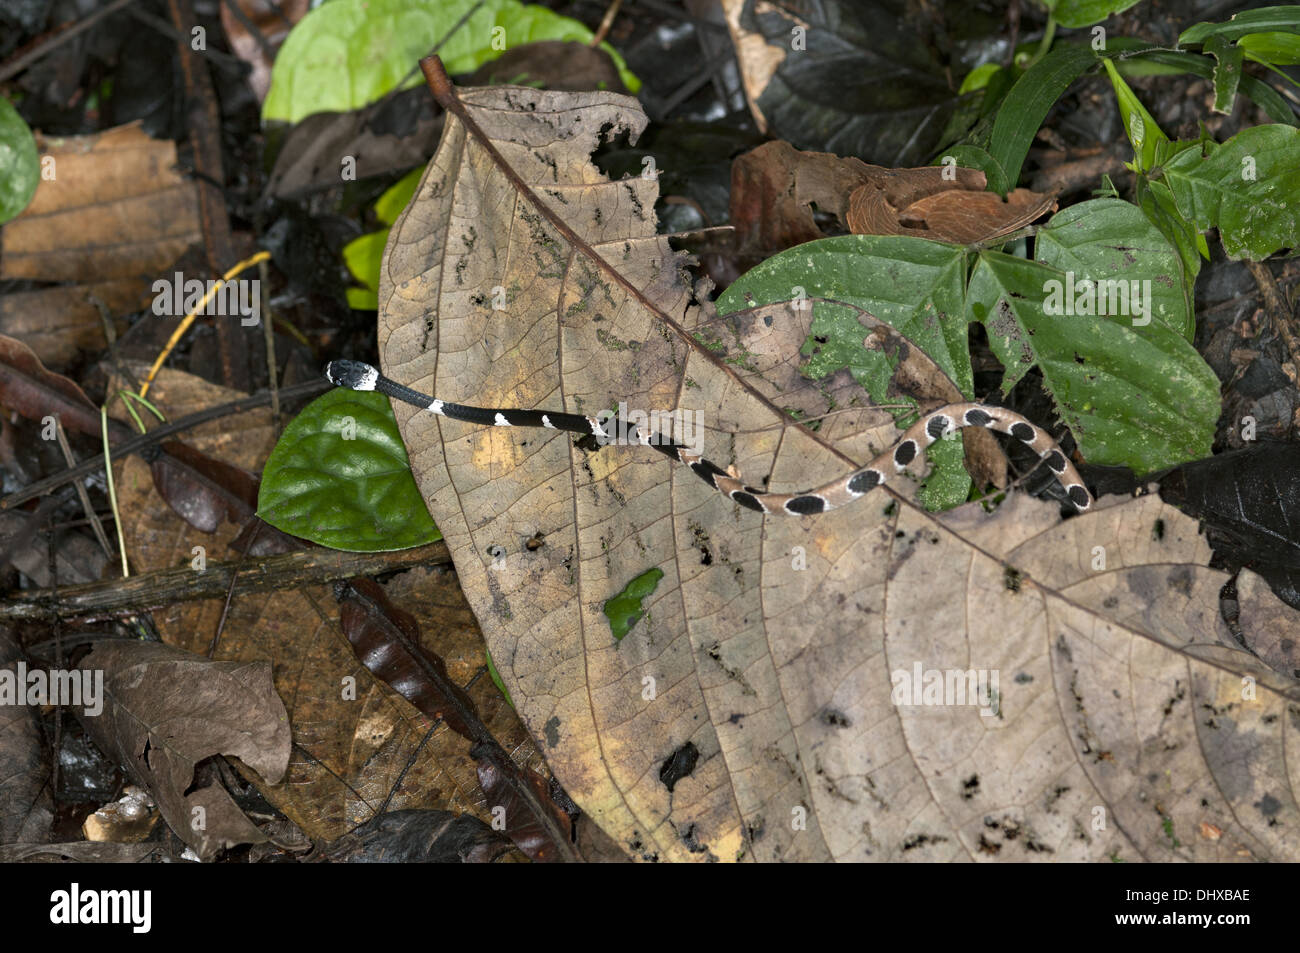 Snail-eating snake in habitat Stock Photo